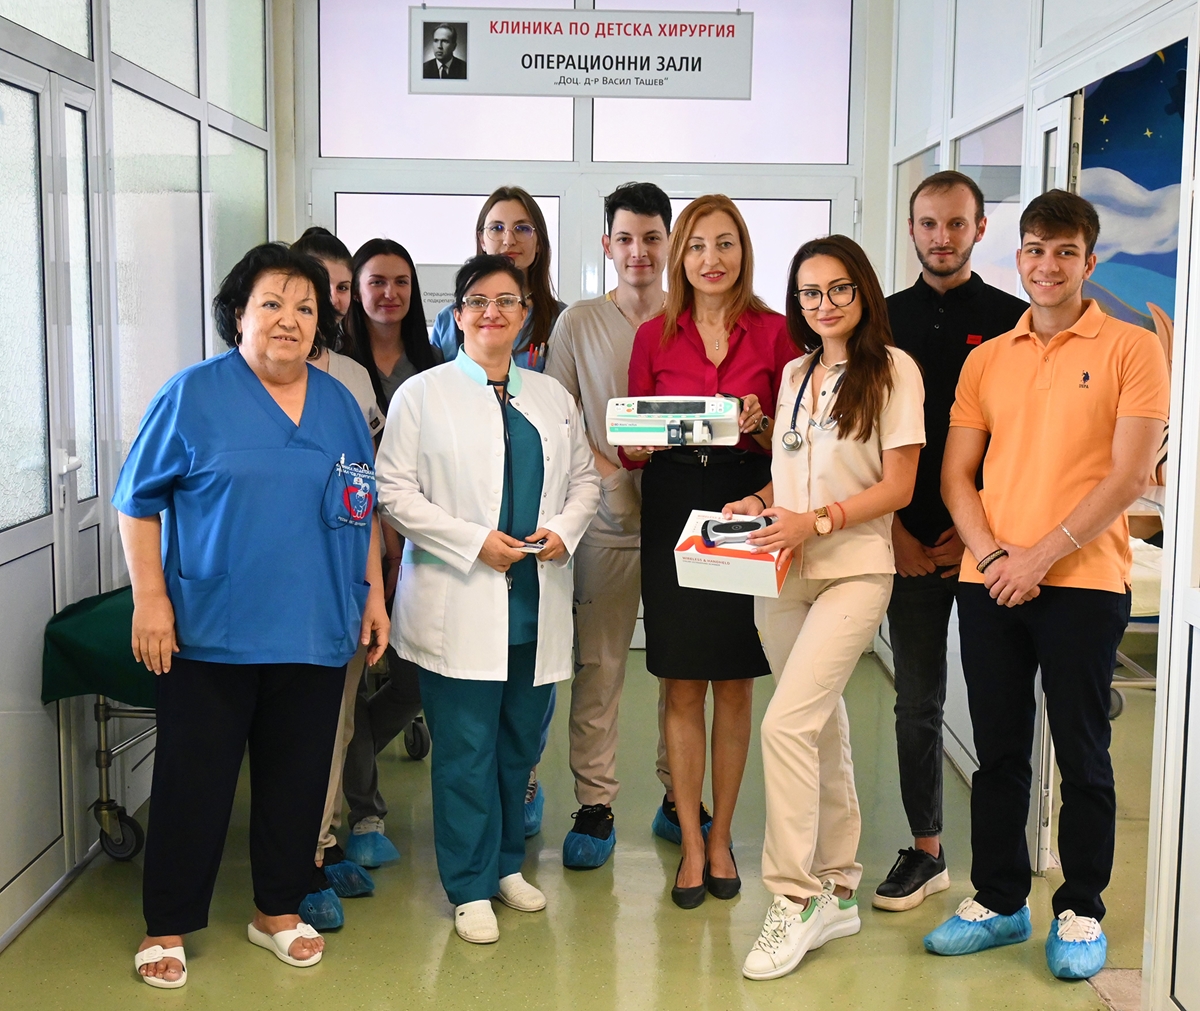 Студенти събраха 10 000 лева и дариха ехограф на клиниката по детска хирургия в Пловдив, където творят чудеса